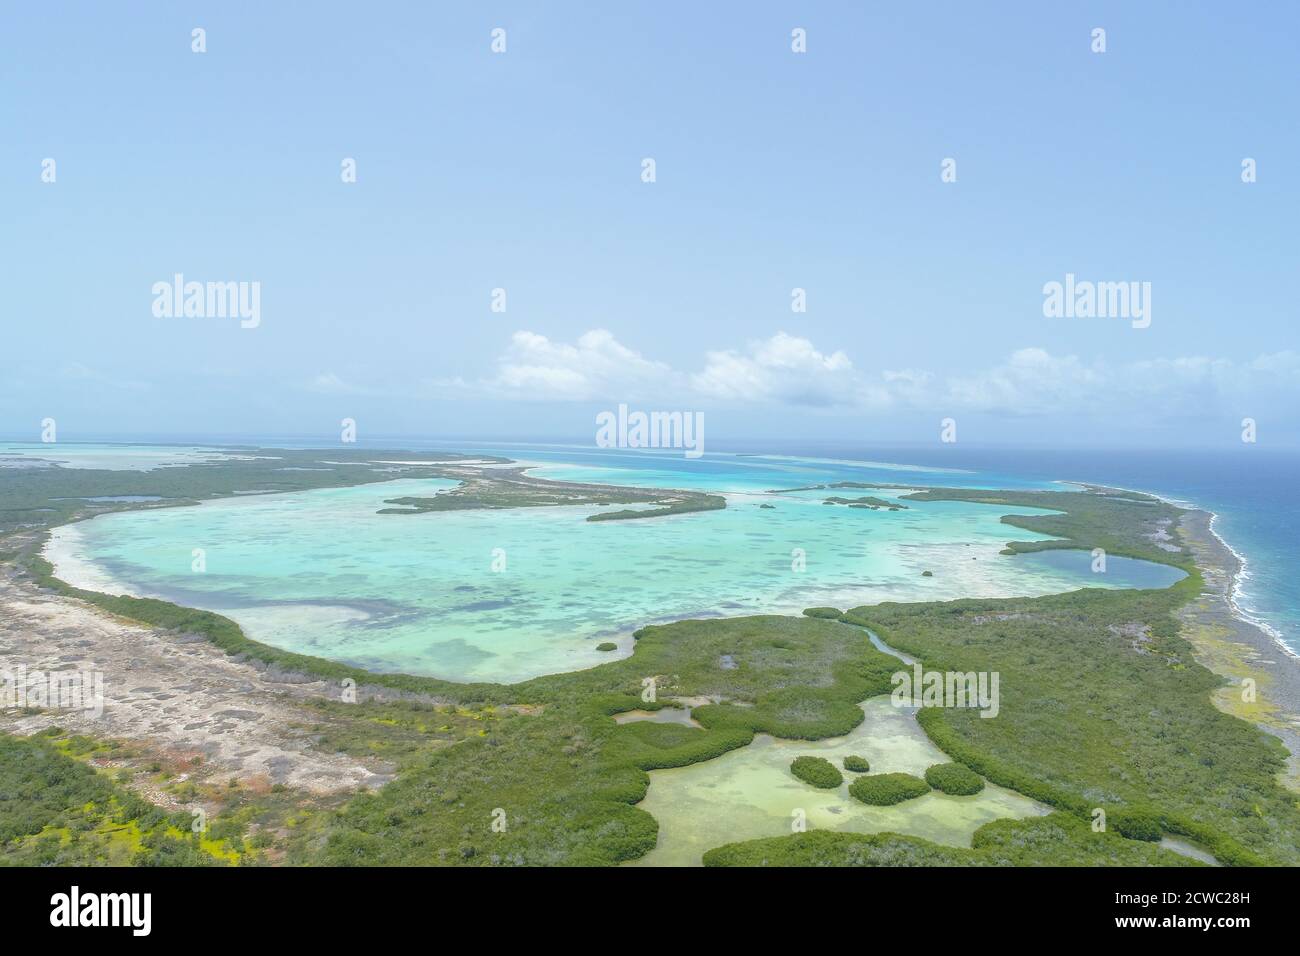 Vue aérienne de l'île des Caraïbes à Los Roques Venezuela Banque D'Images